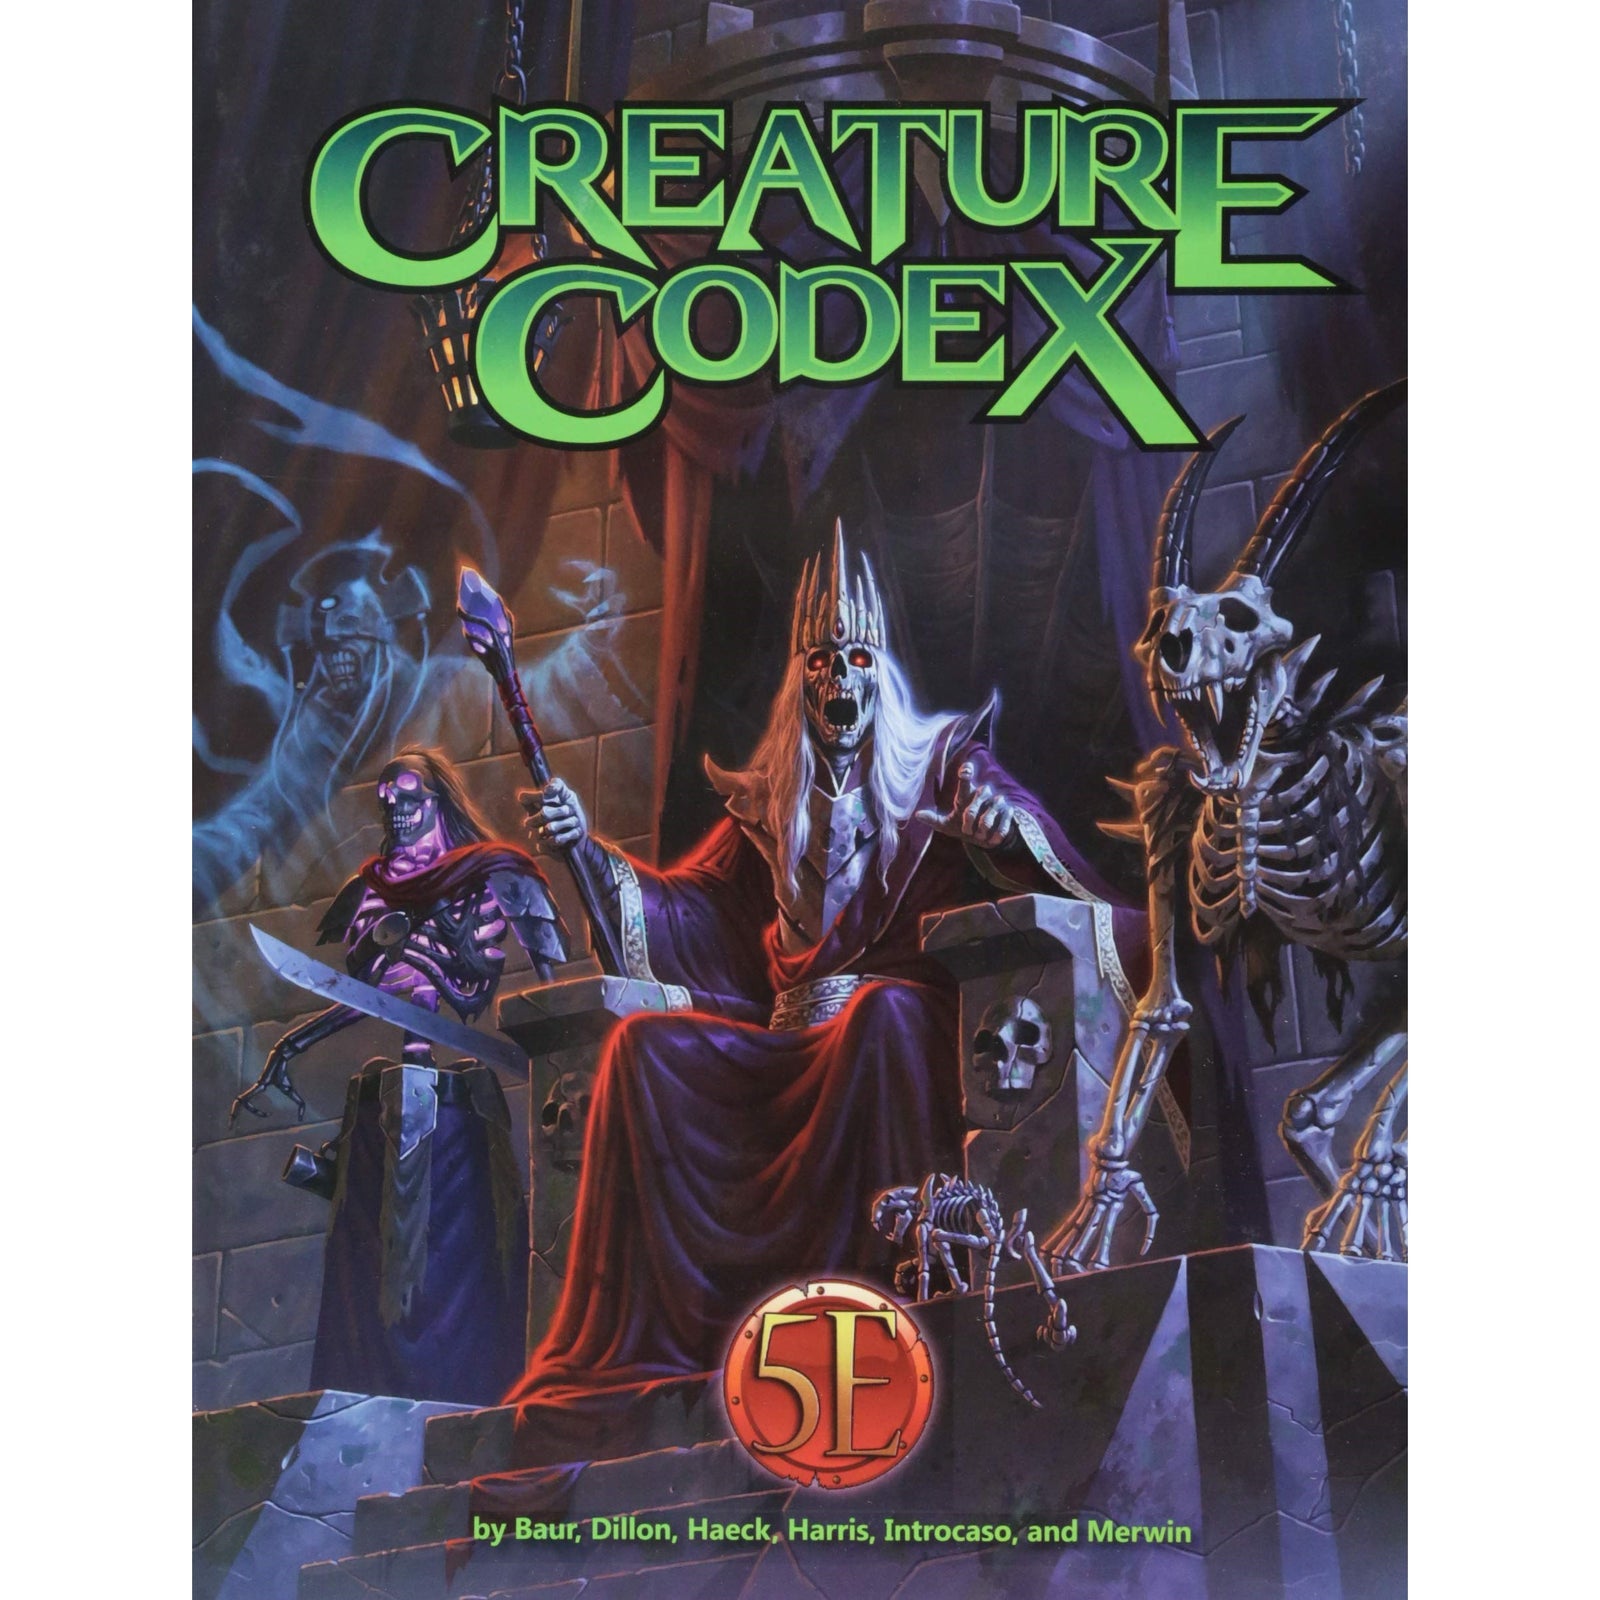 Cover Art for Creature Codex 5E